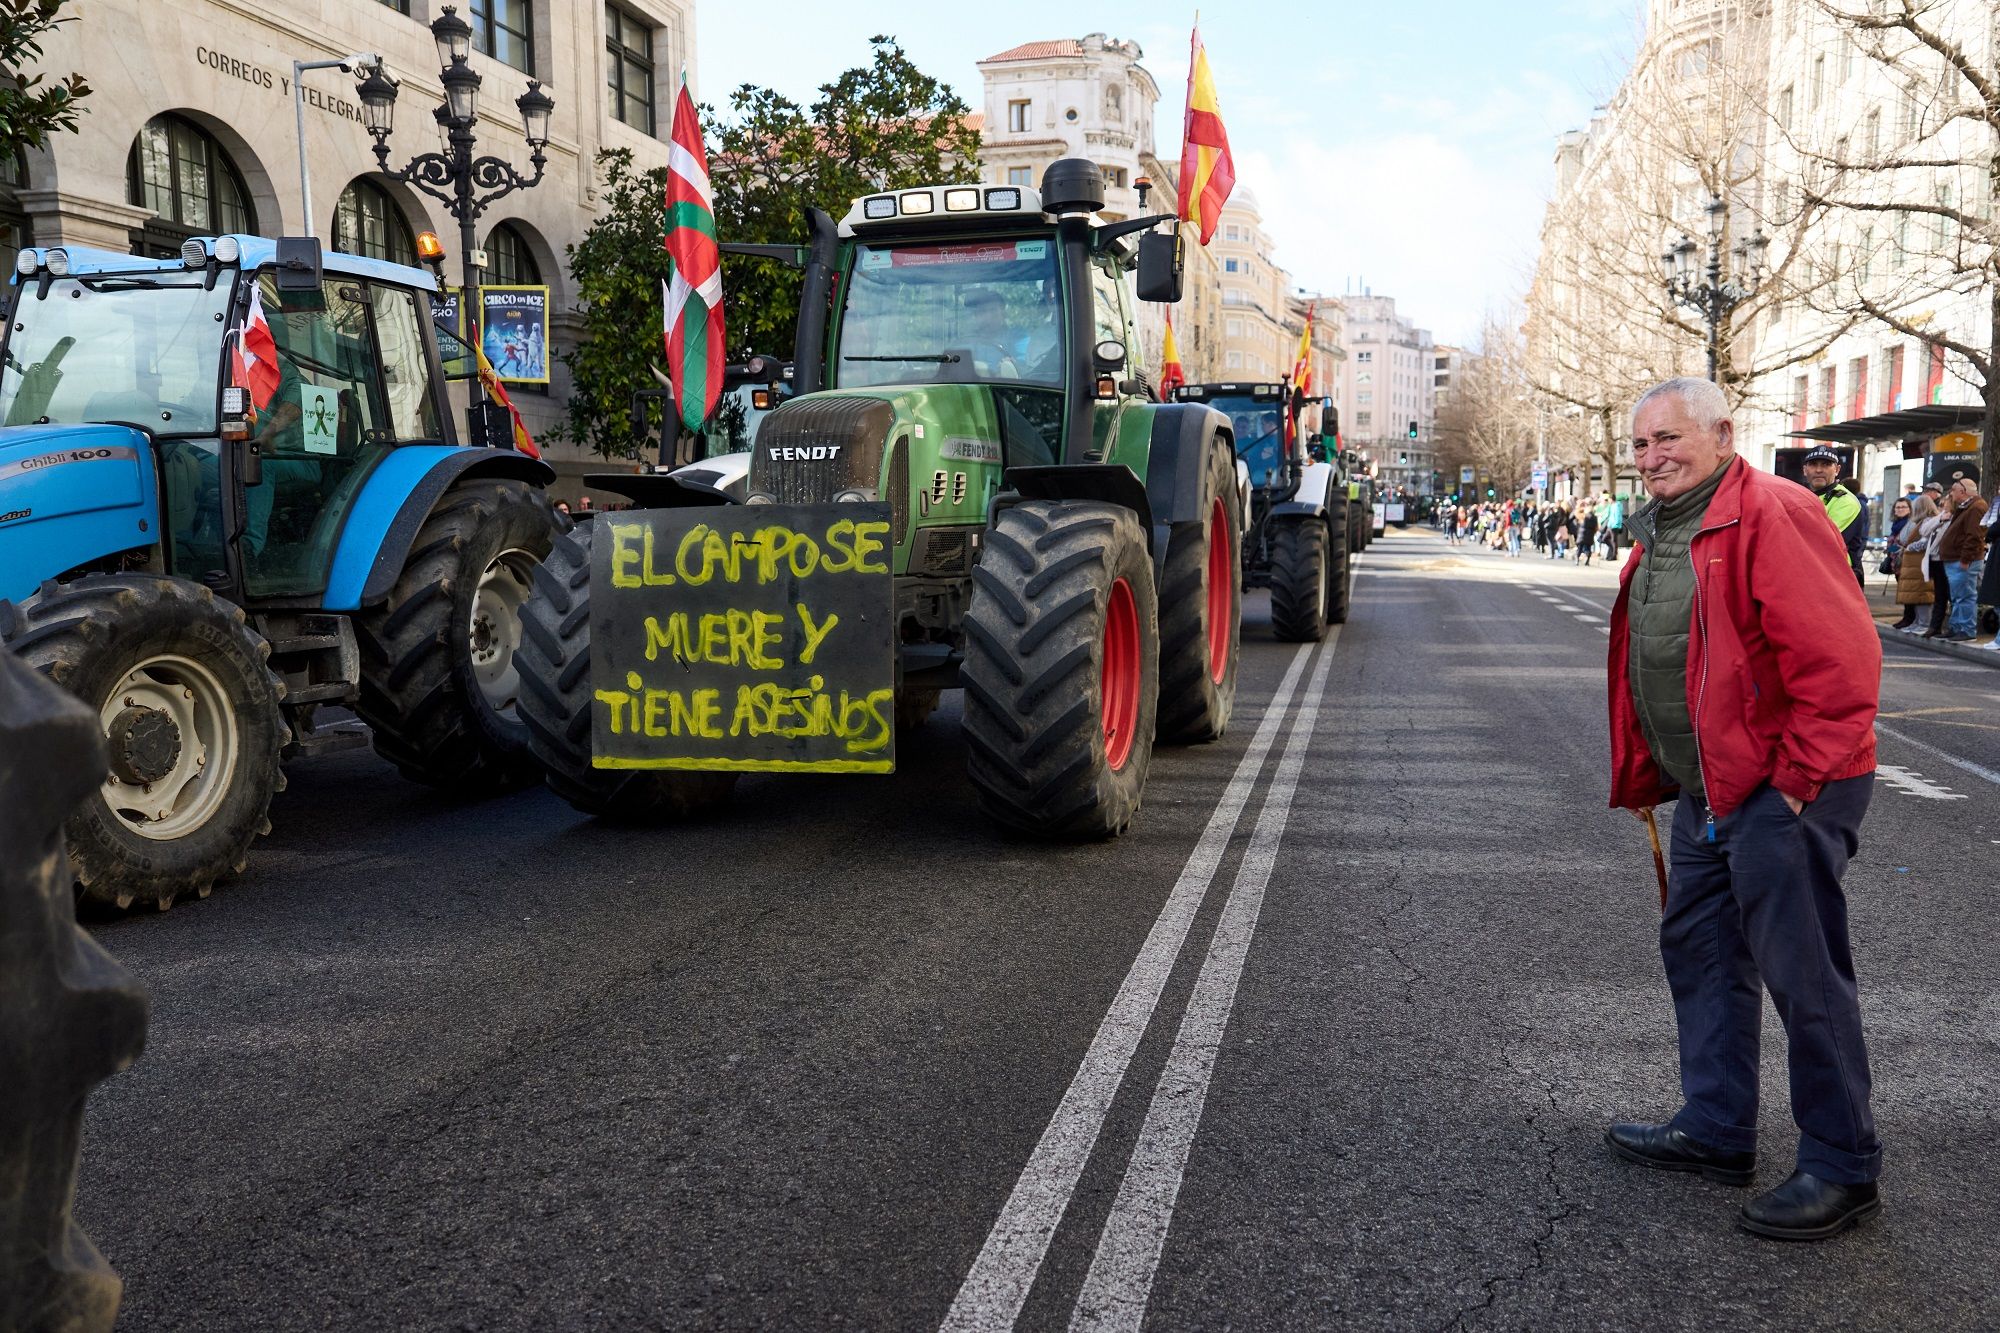 La brecha digital golpea a agricultores y ganaderos mayores: "Si nos obligan, dejaremos el campo". Foto:EuropaPress